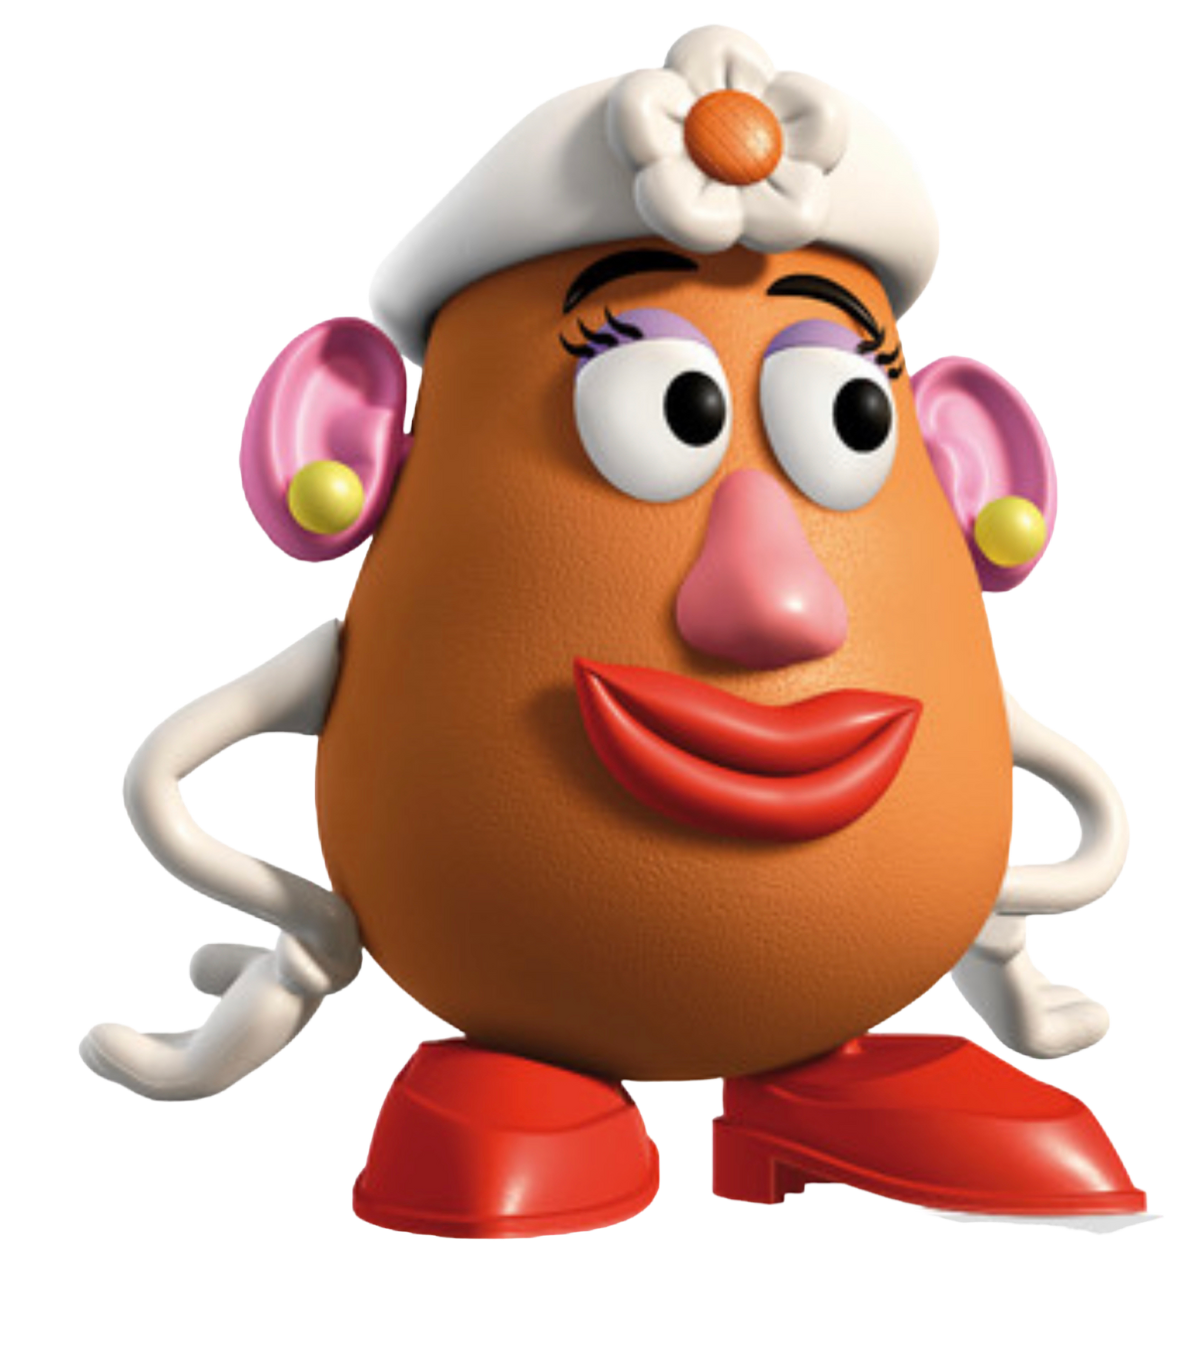 Mr. Potato Head, Toy Story Wiki